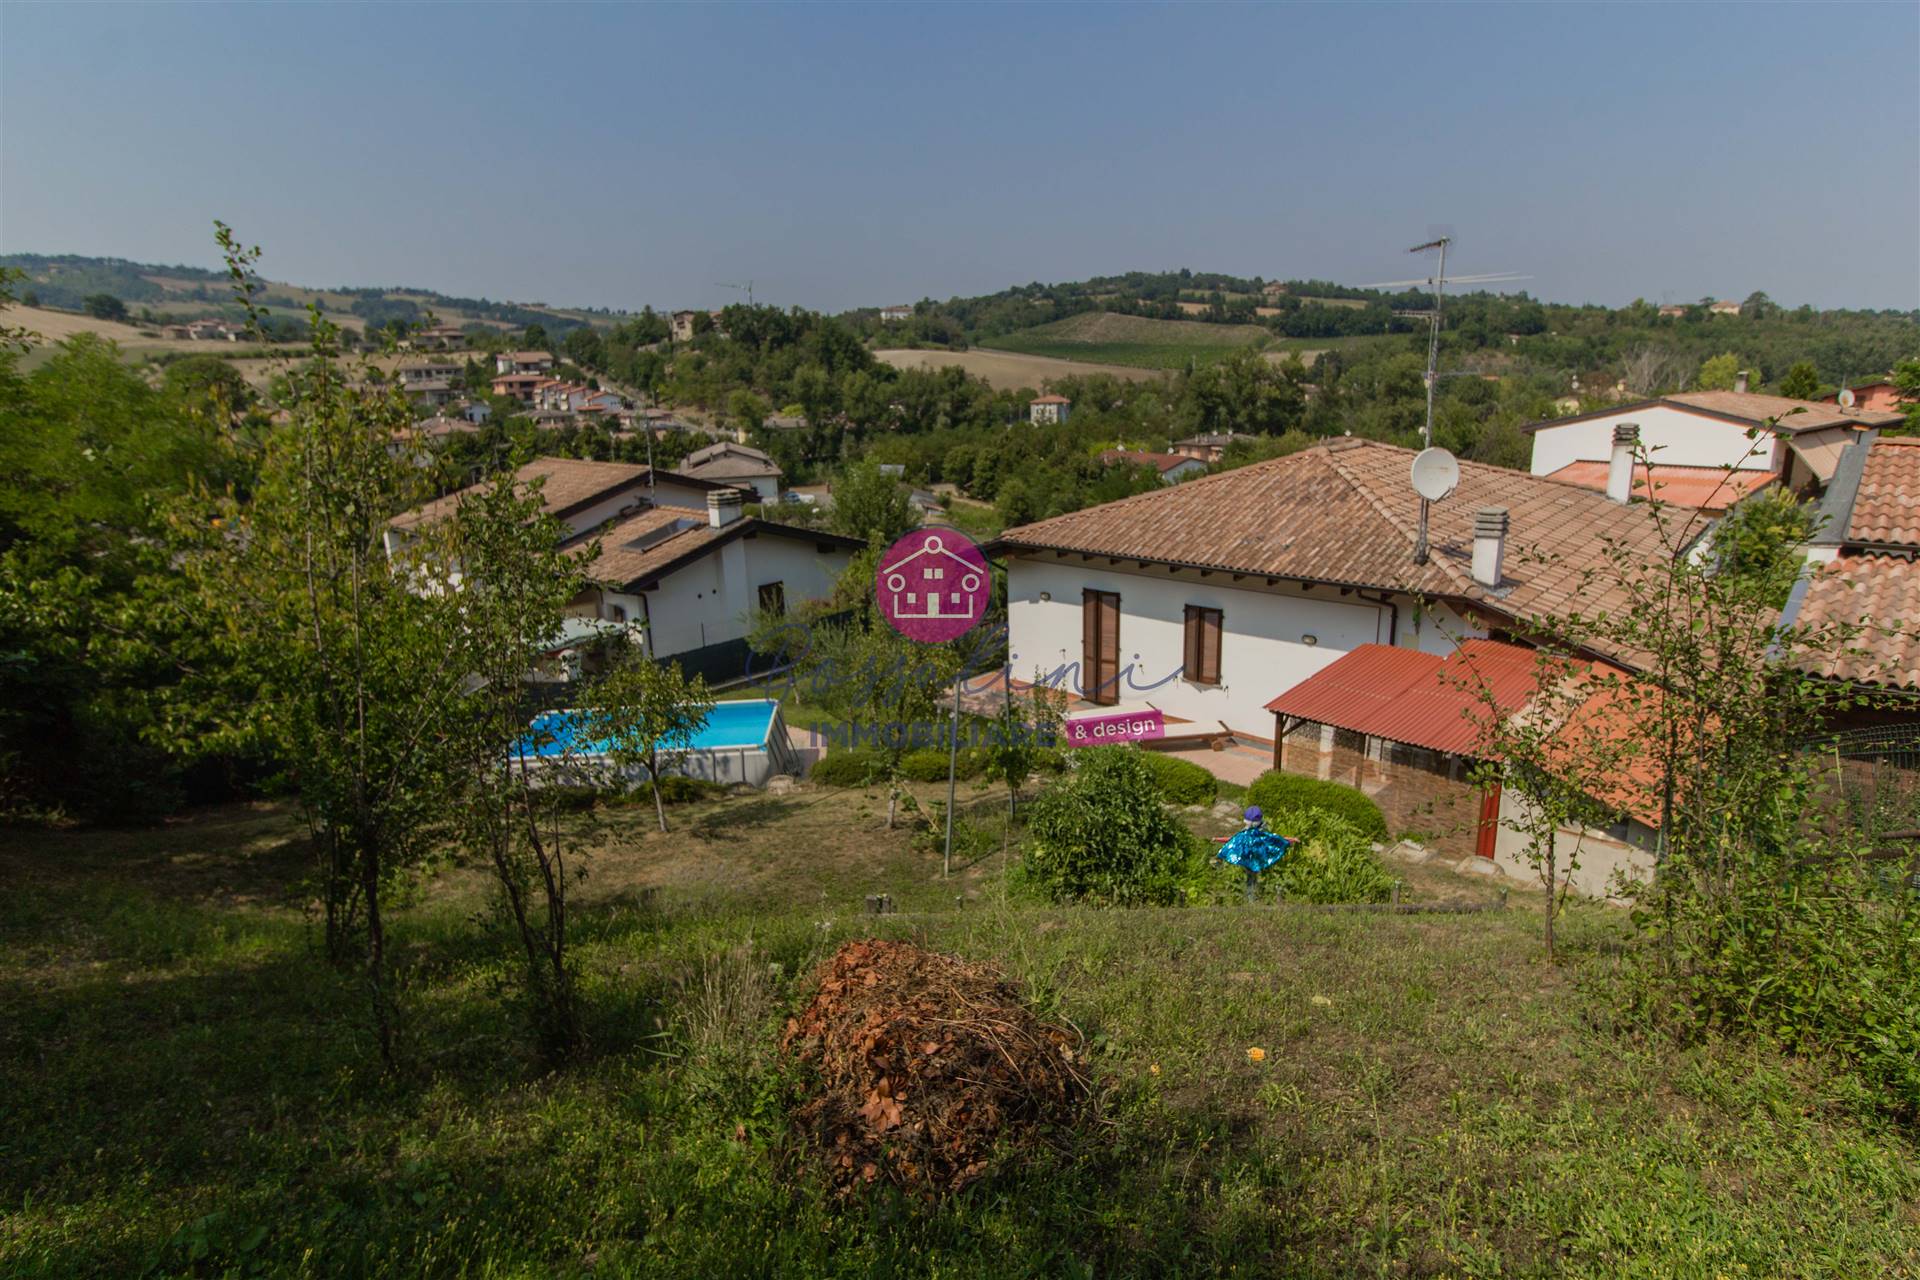 Villa in vendita a Piozzano, 7 locali, prezzo € 210.000 | CambioCasa.it